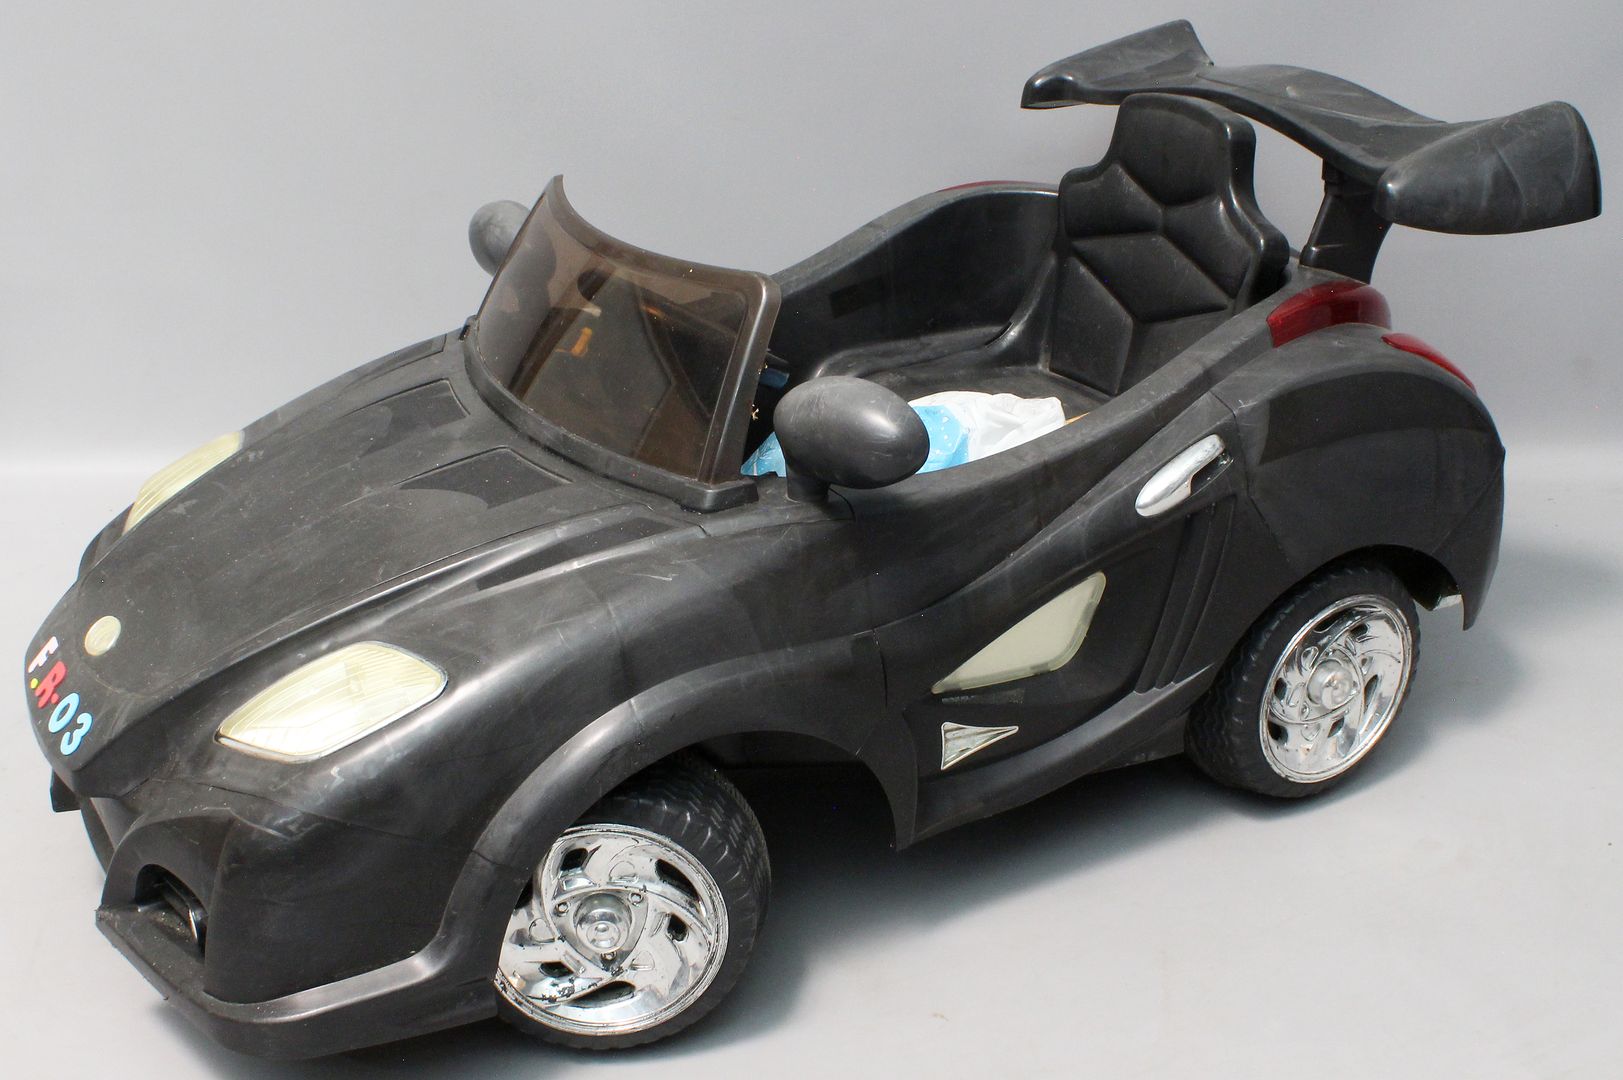 Spielzeugauto mit Elektromotor.